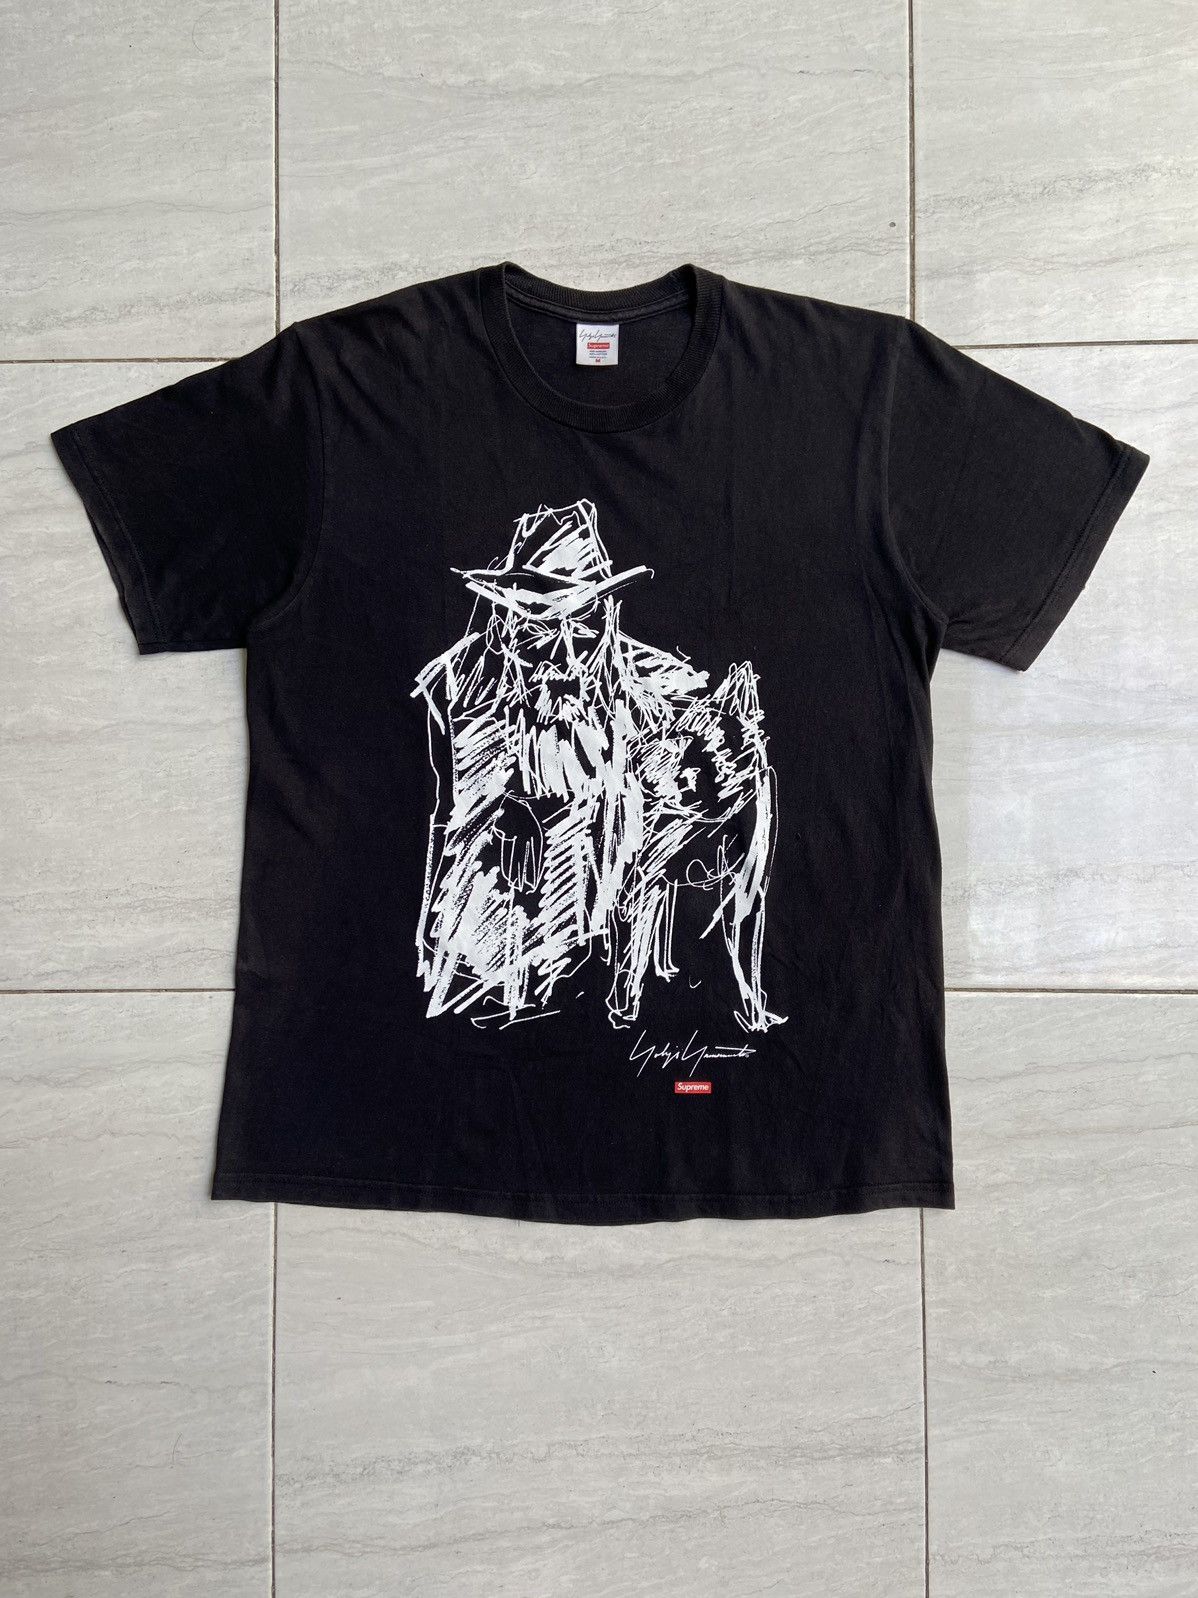 Supreme YOHJI YAMAMOTO x SUPREME Black T-Shirt | Grailed